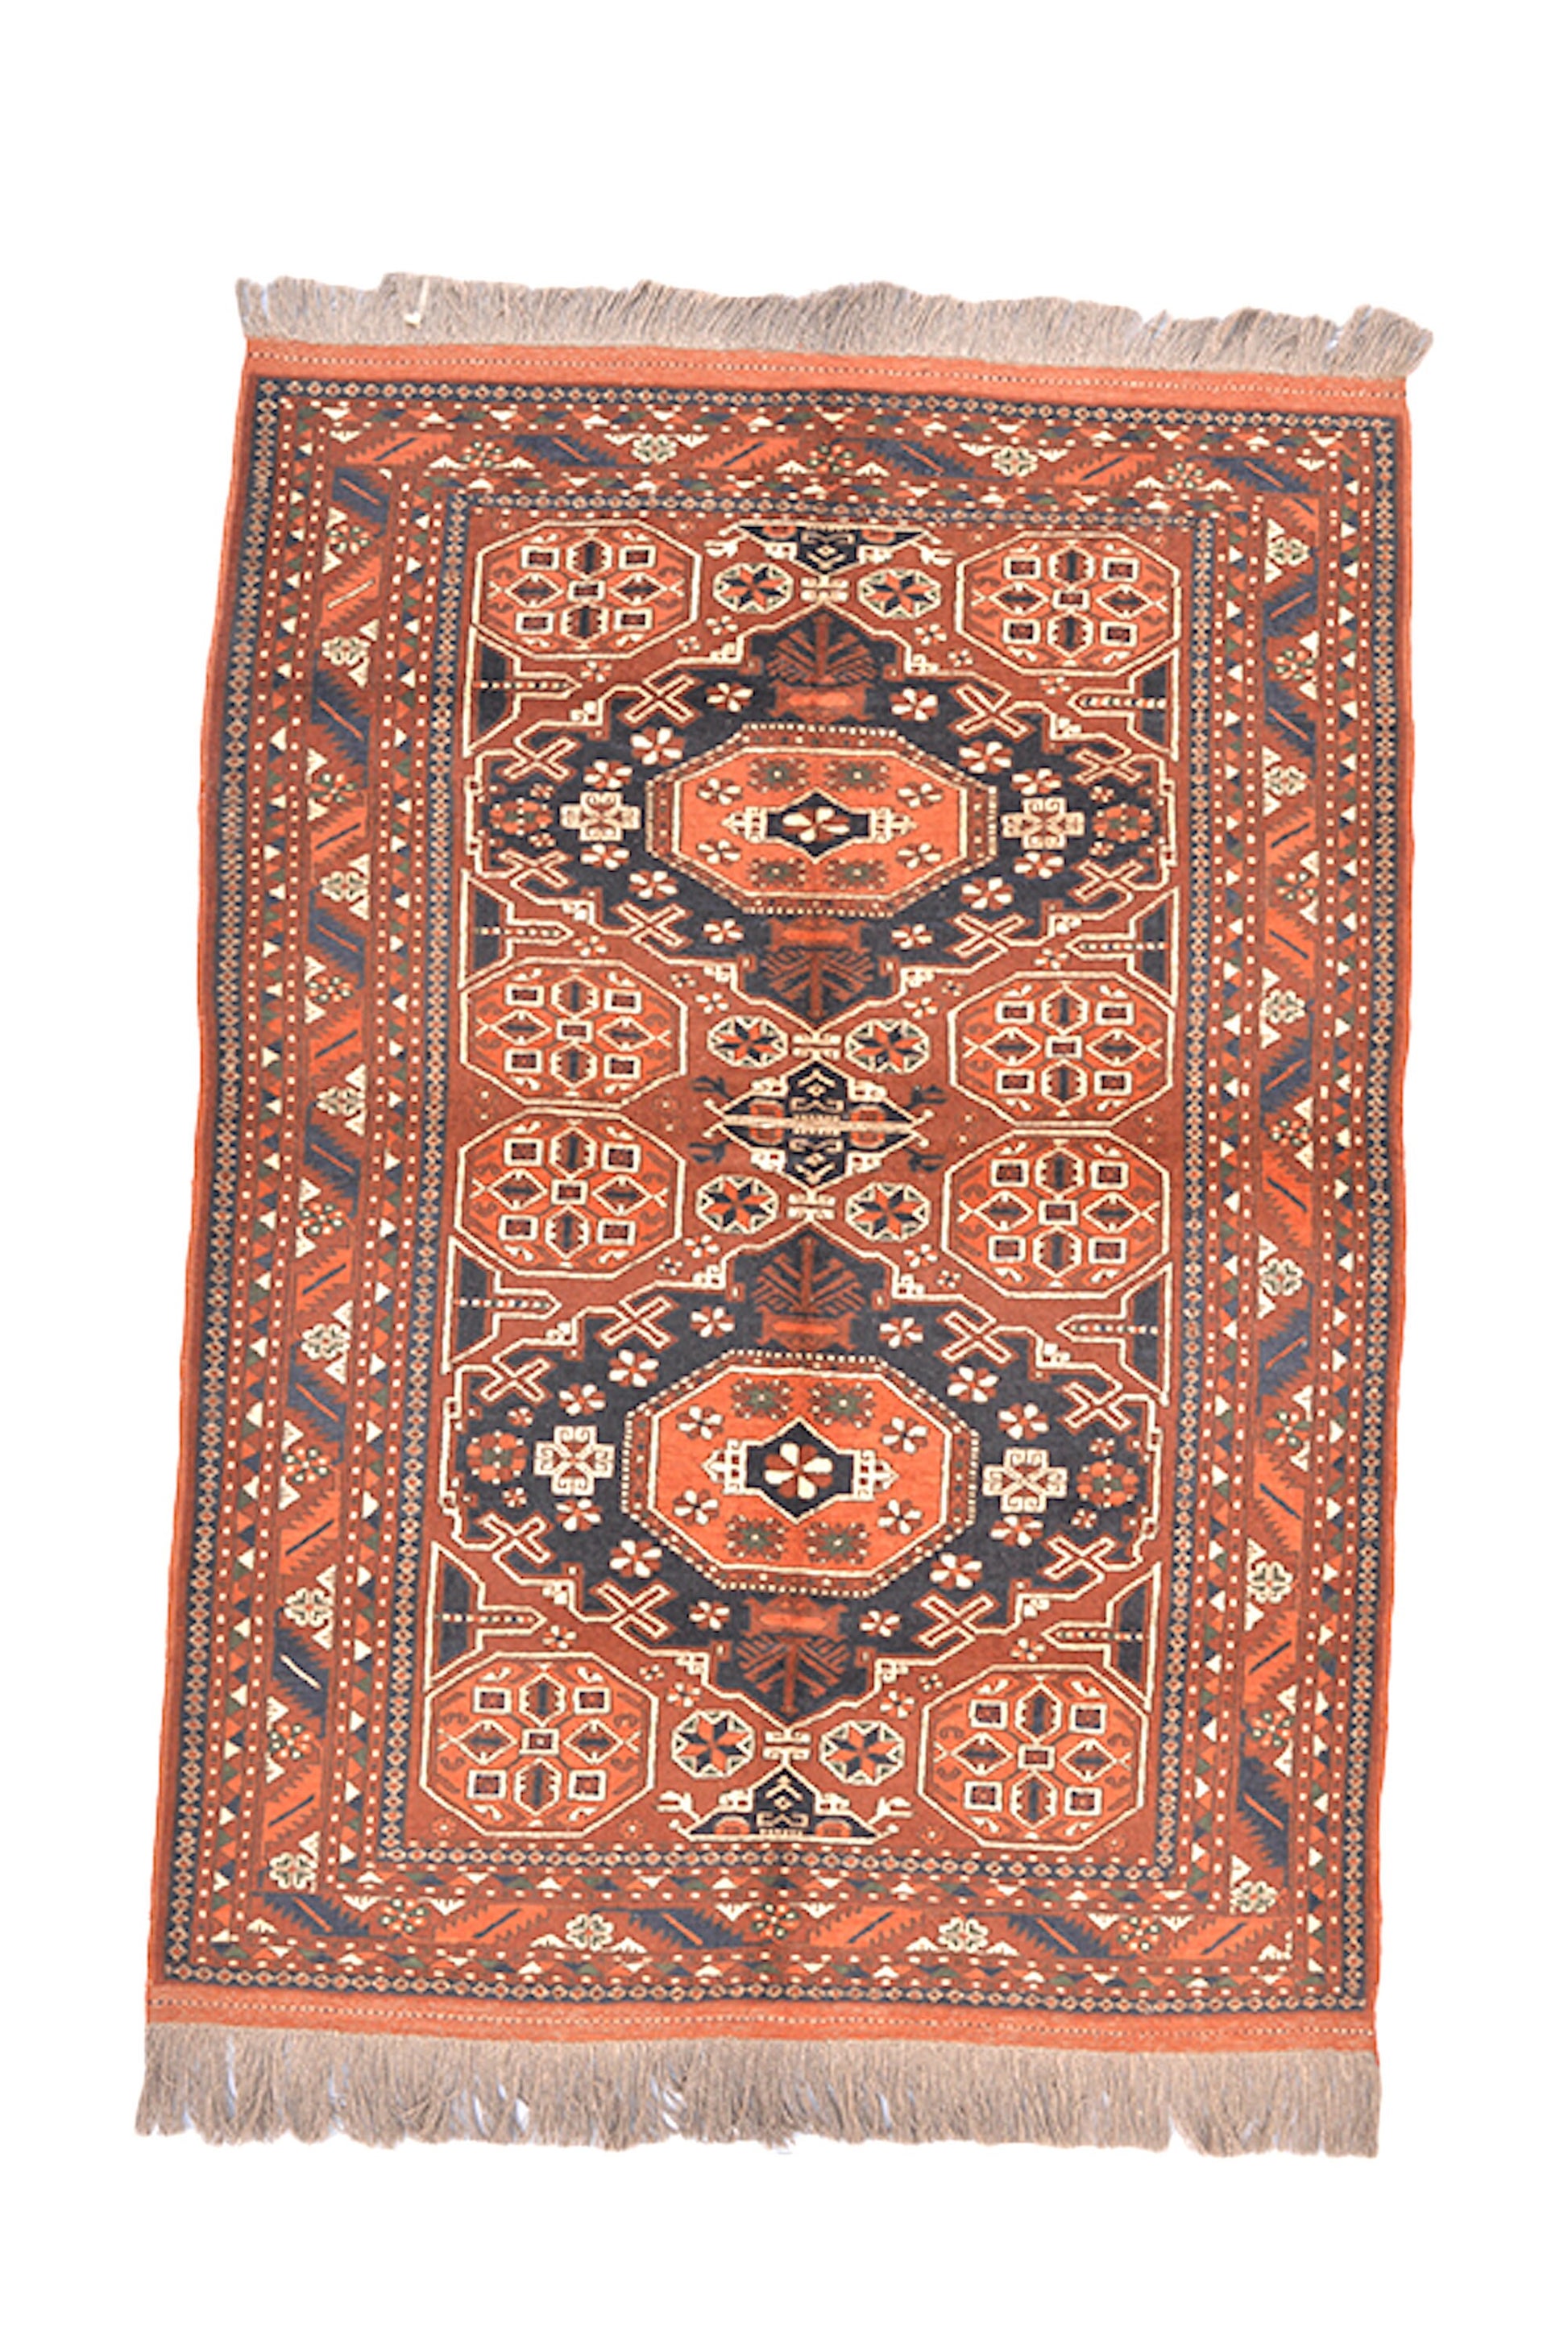 4 x 6 Orange Blue Tribal Geometric Rug| Handmade Oriental Wool Area Rug | Vintage Caucasian Persian Rug | Living Room Entryway Rug